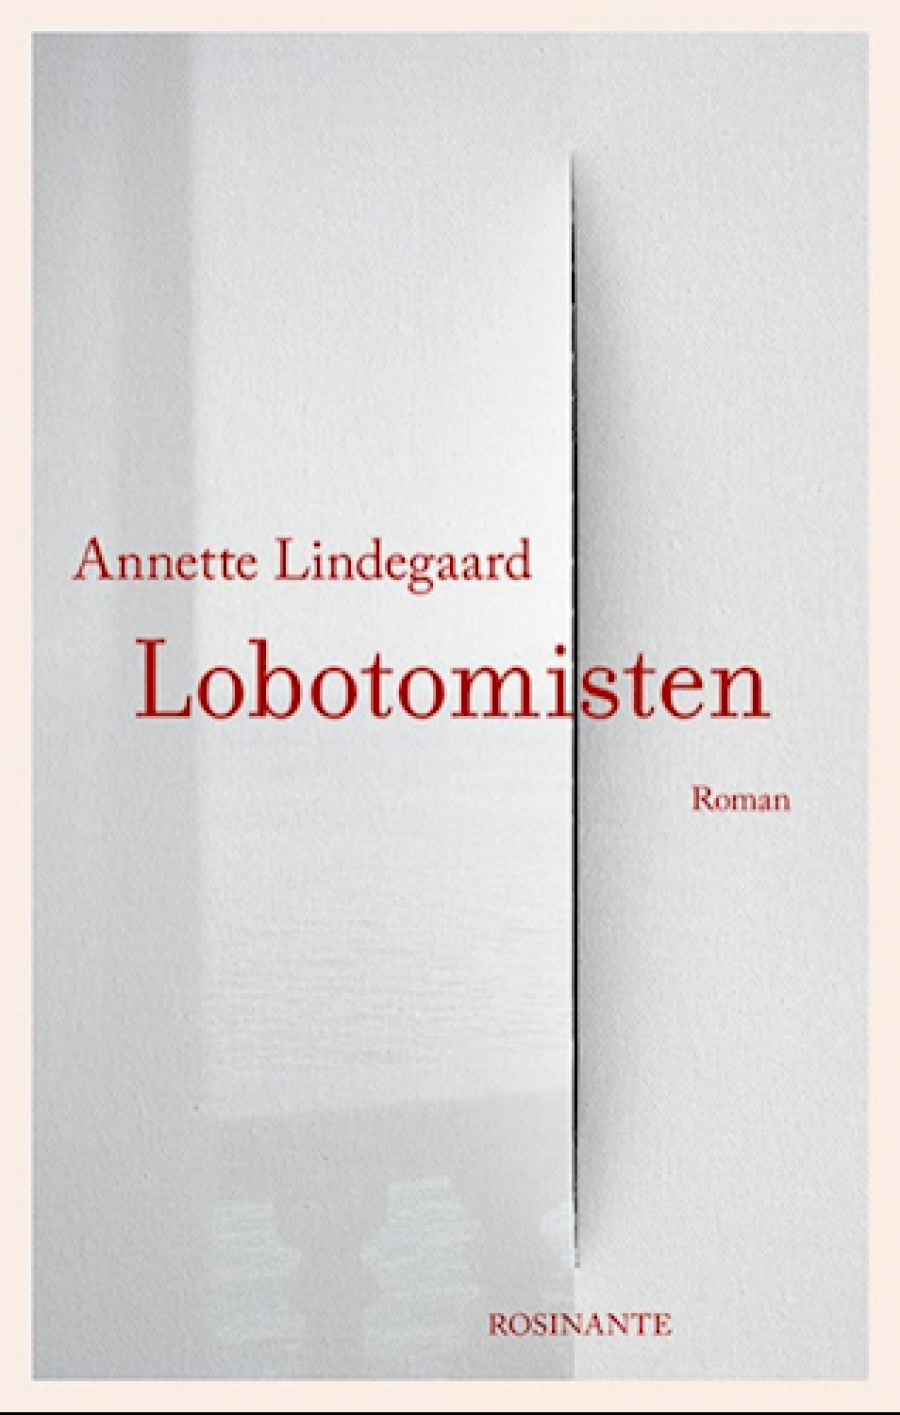 Lobotomisten af Annette Lindegaard